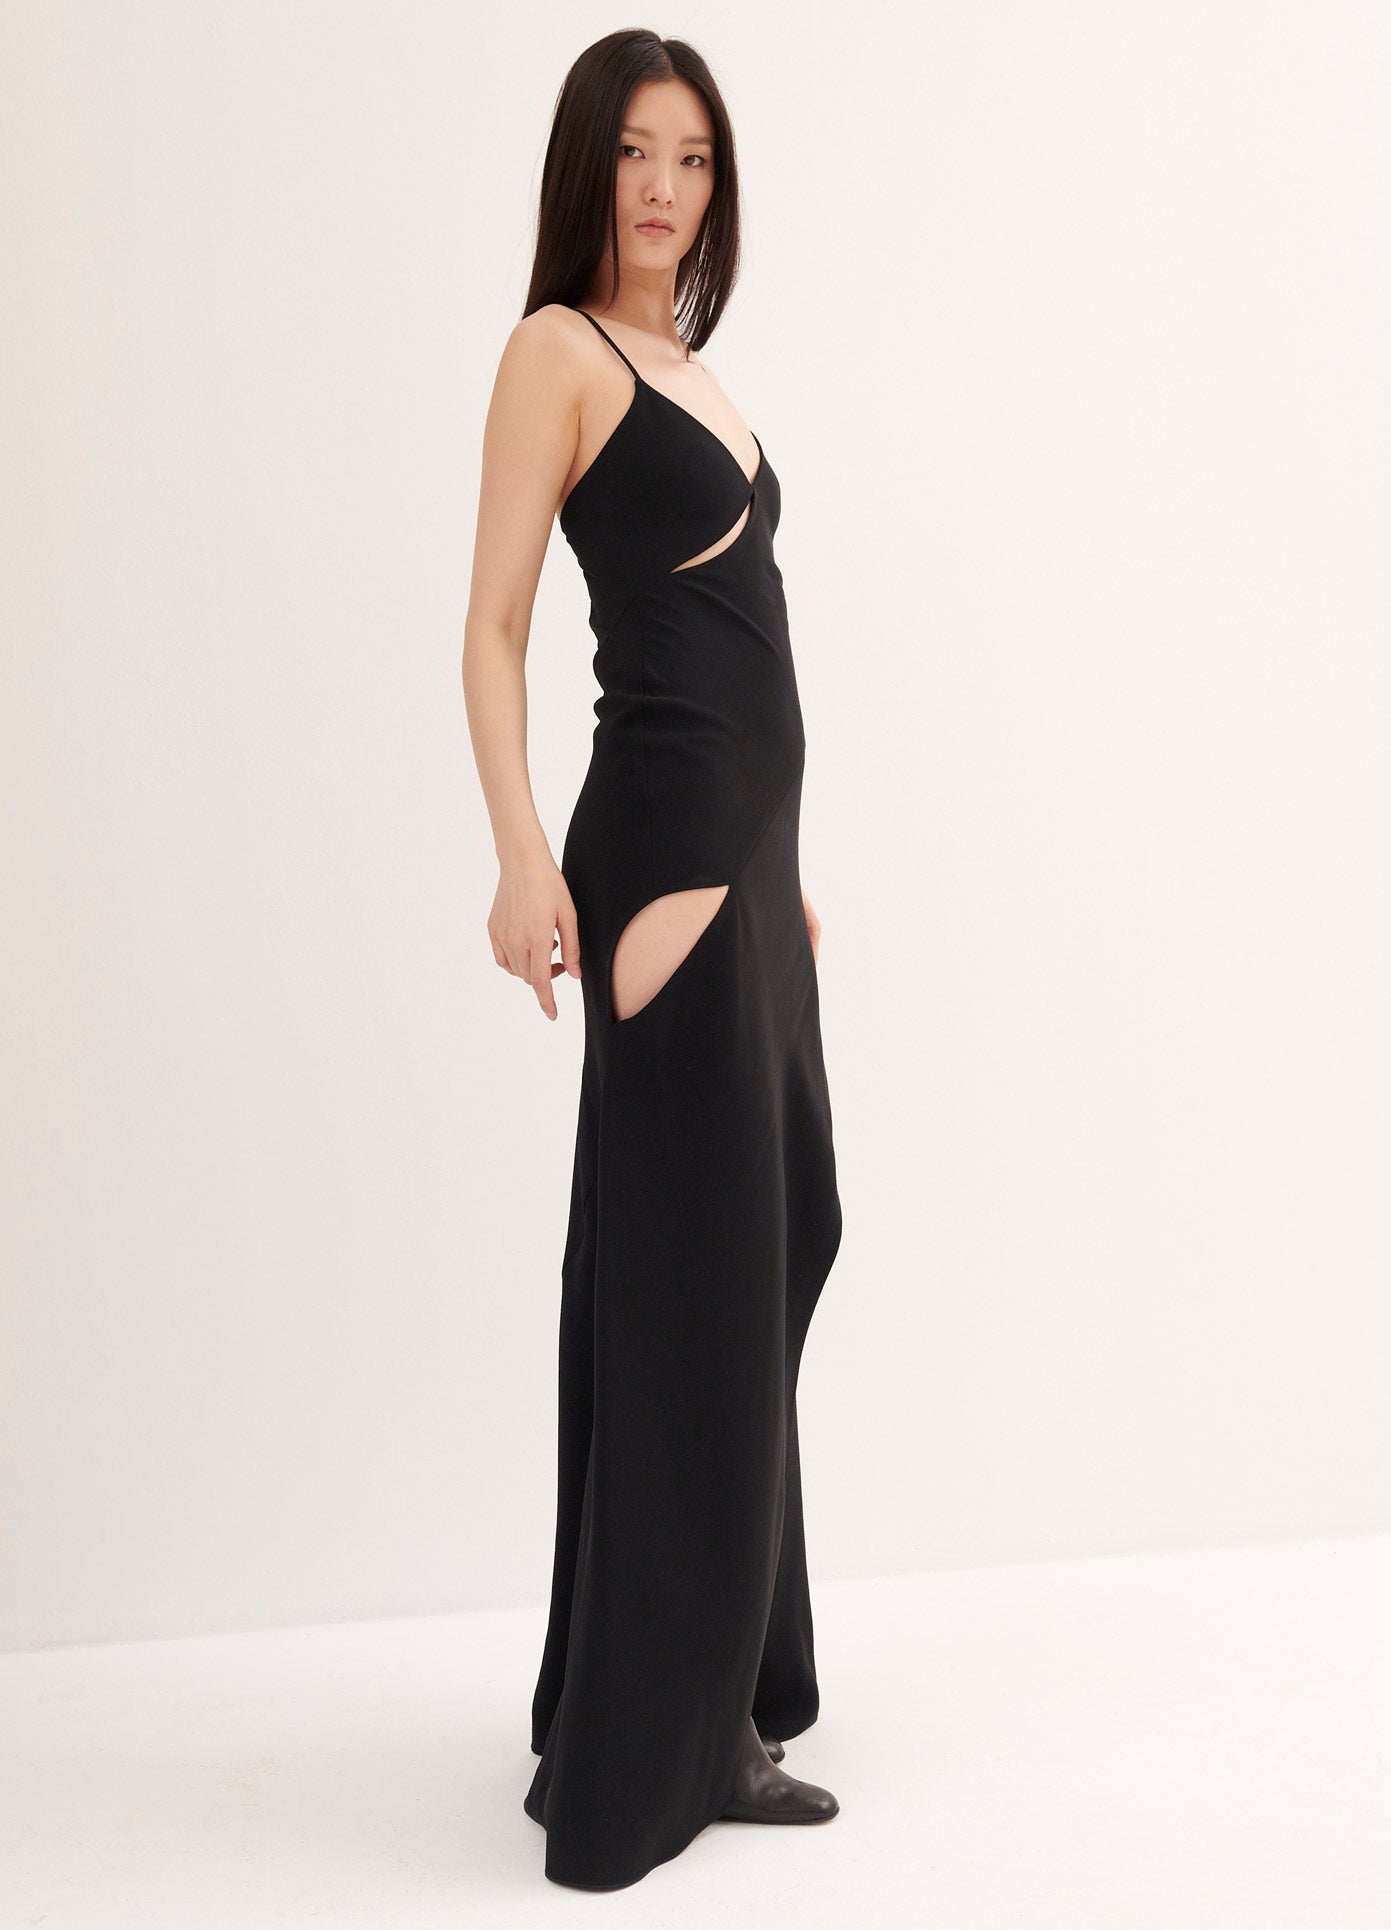 MONSE Slip Dress in Black on Model Full Side View